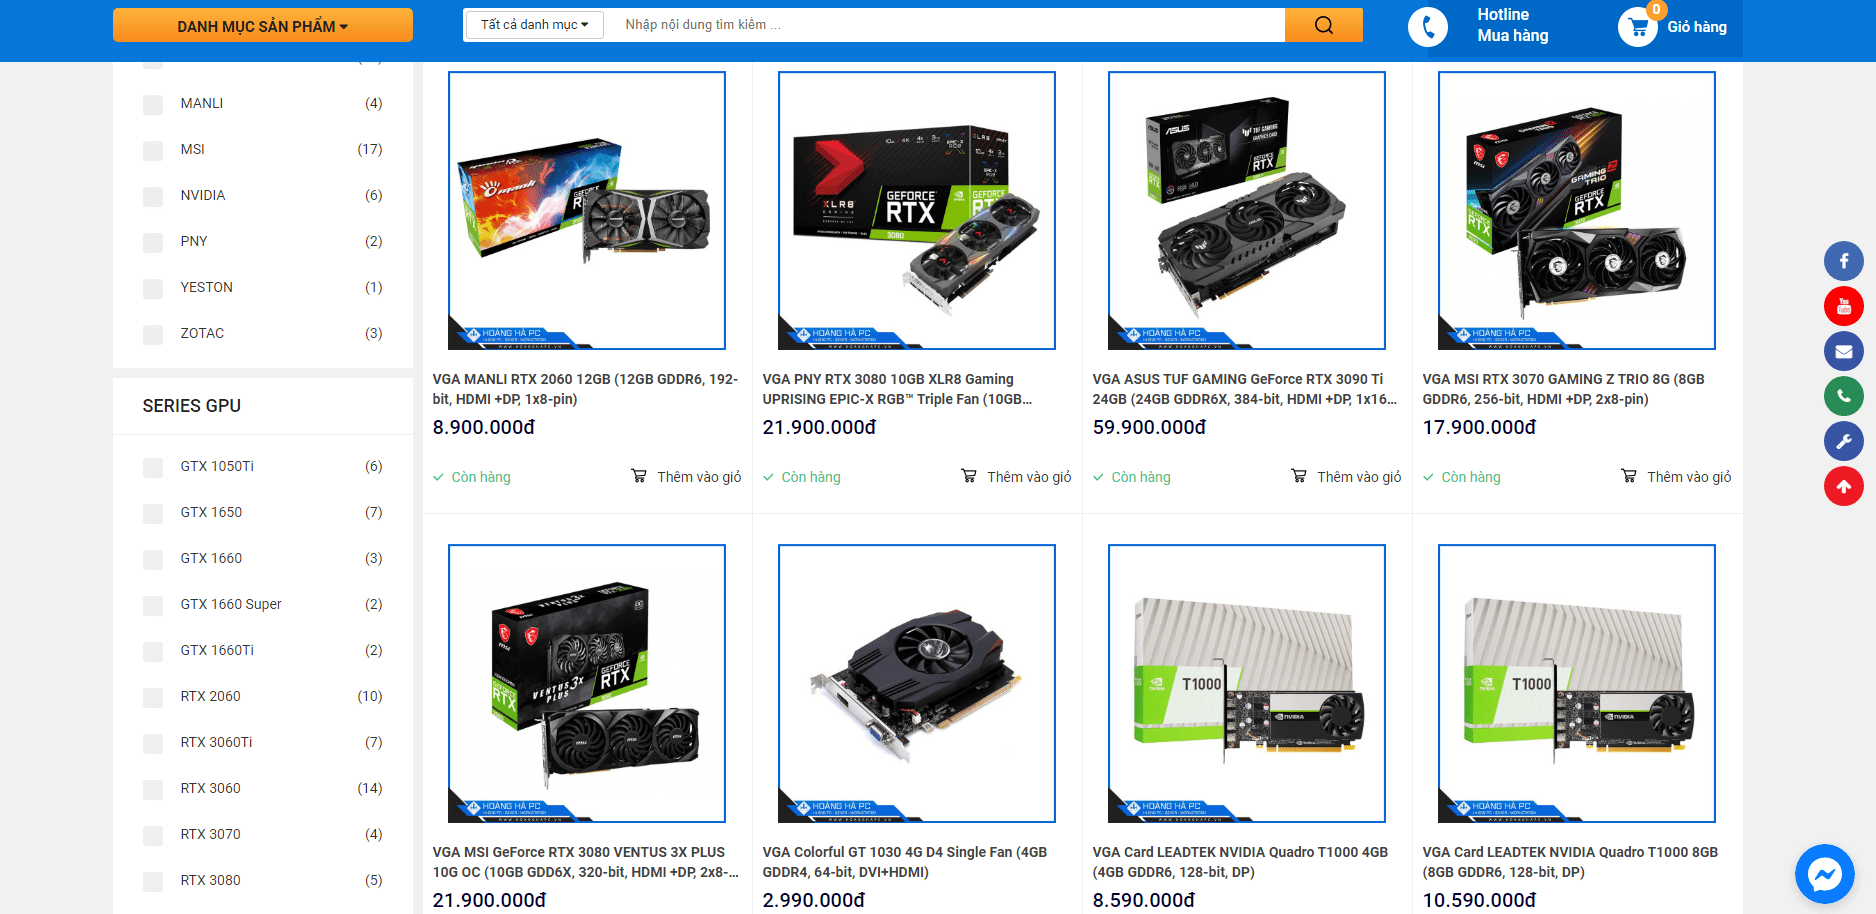 Hoàng Hà PC - Cung cấp VGA Nvidia Uy tín, chất lượng và chuyên nghiệp